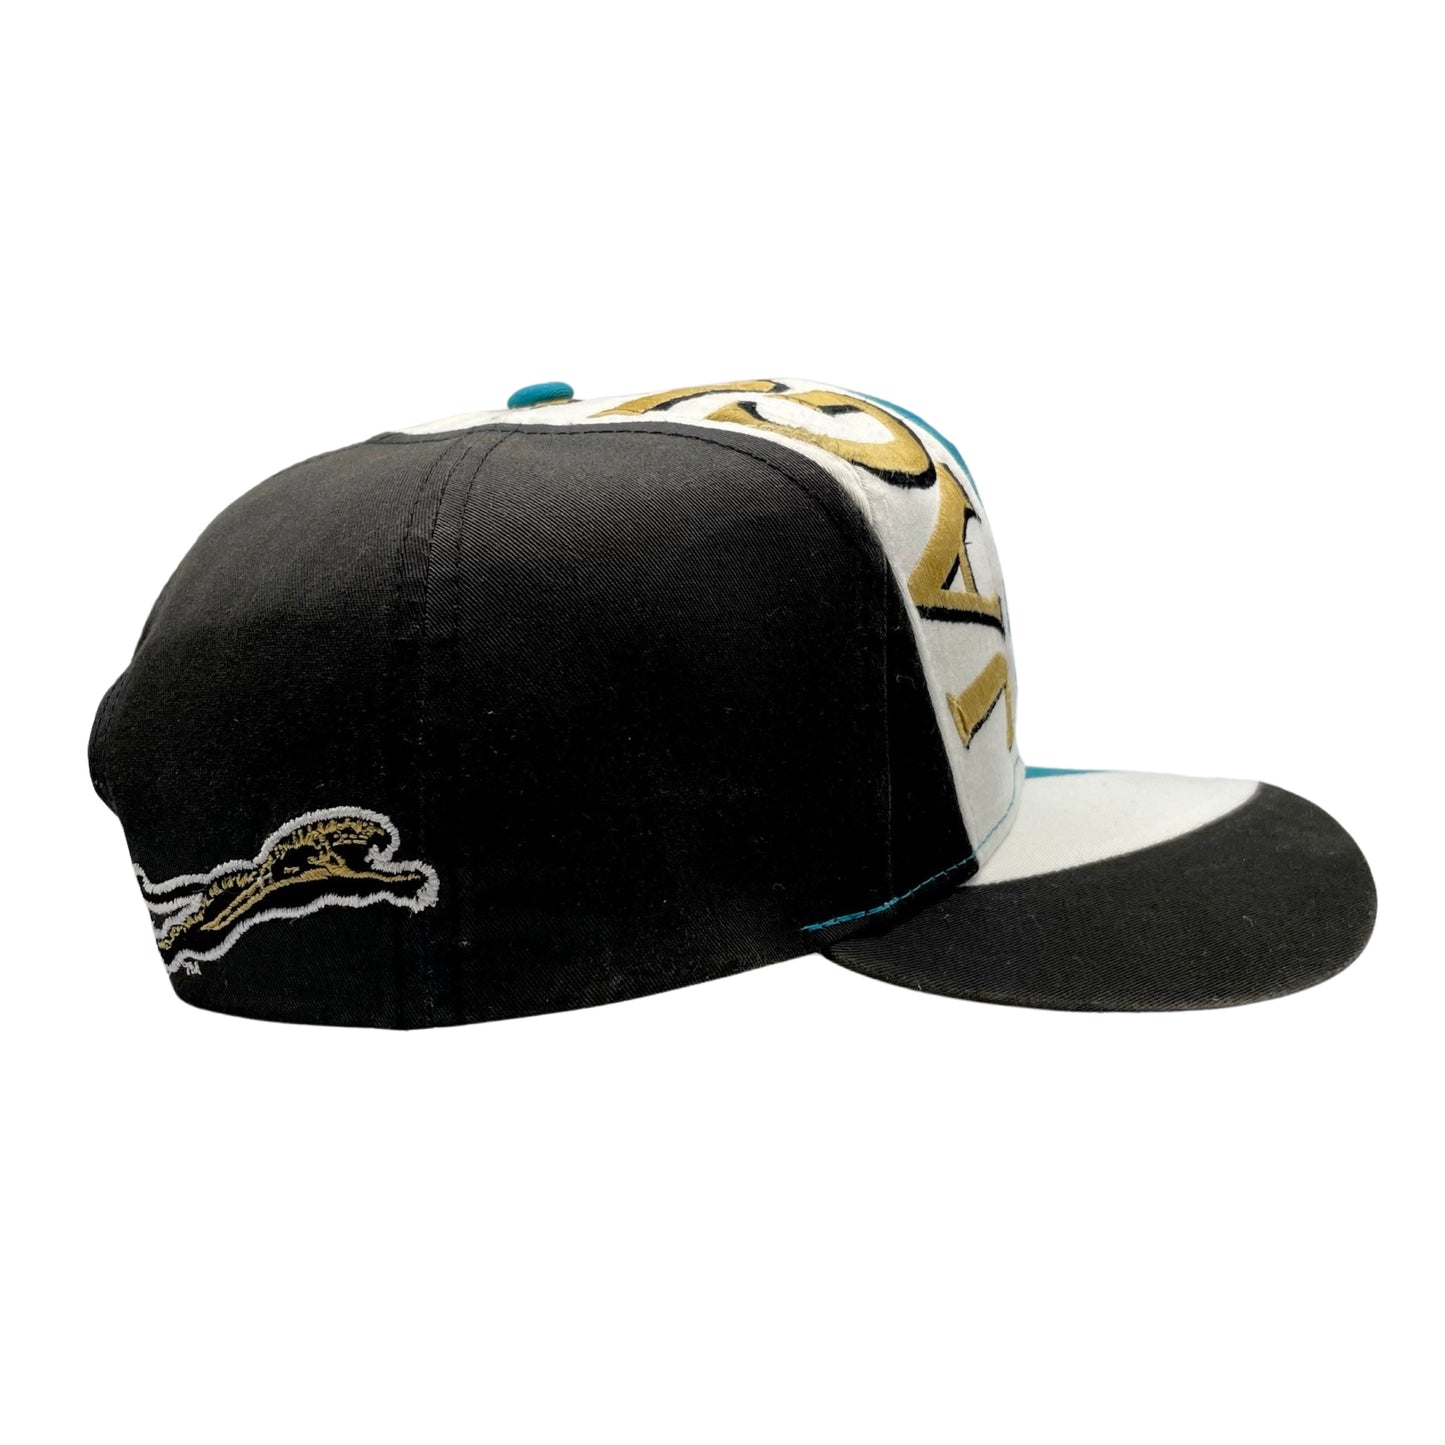 Vintage Jacksonville Jaguars banned logo "Highway" hat